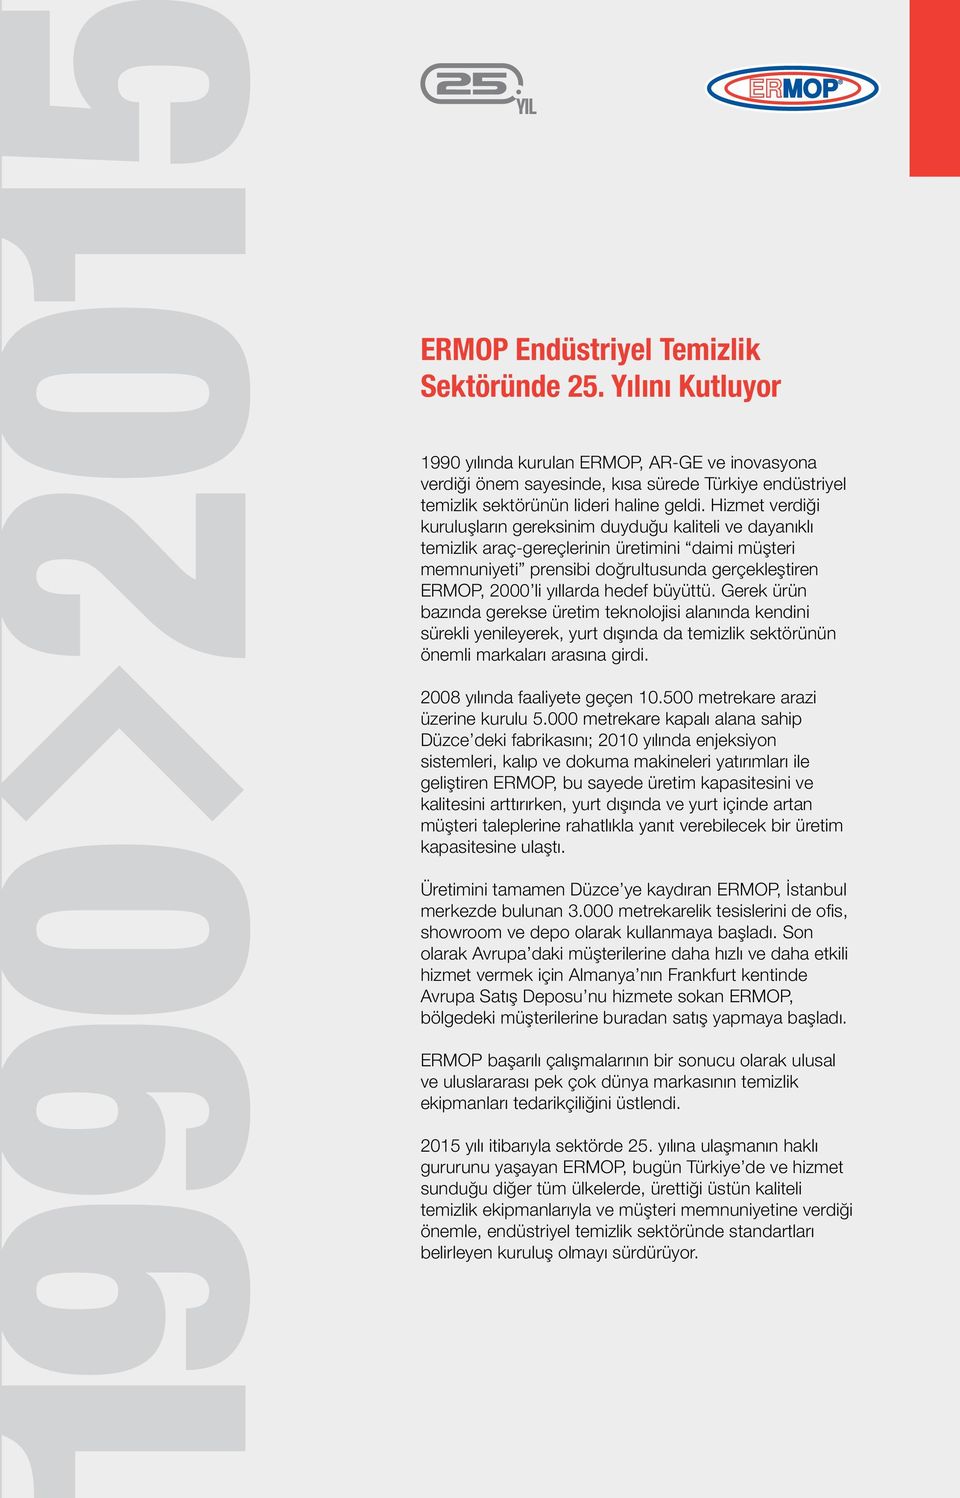 Hizmet verdiği kuruluşların gereksinim duyduğu kaliteli ve dayanıklı temizlik araç-gereçlerinin üretimini daimi müşteri memnuniyeti prensibi doğrultusunda gerçekleştiren ERMOP, 2000 li yıllarda hedef